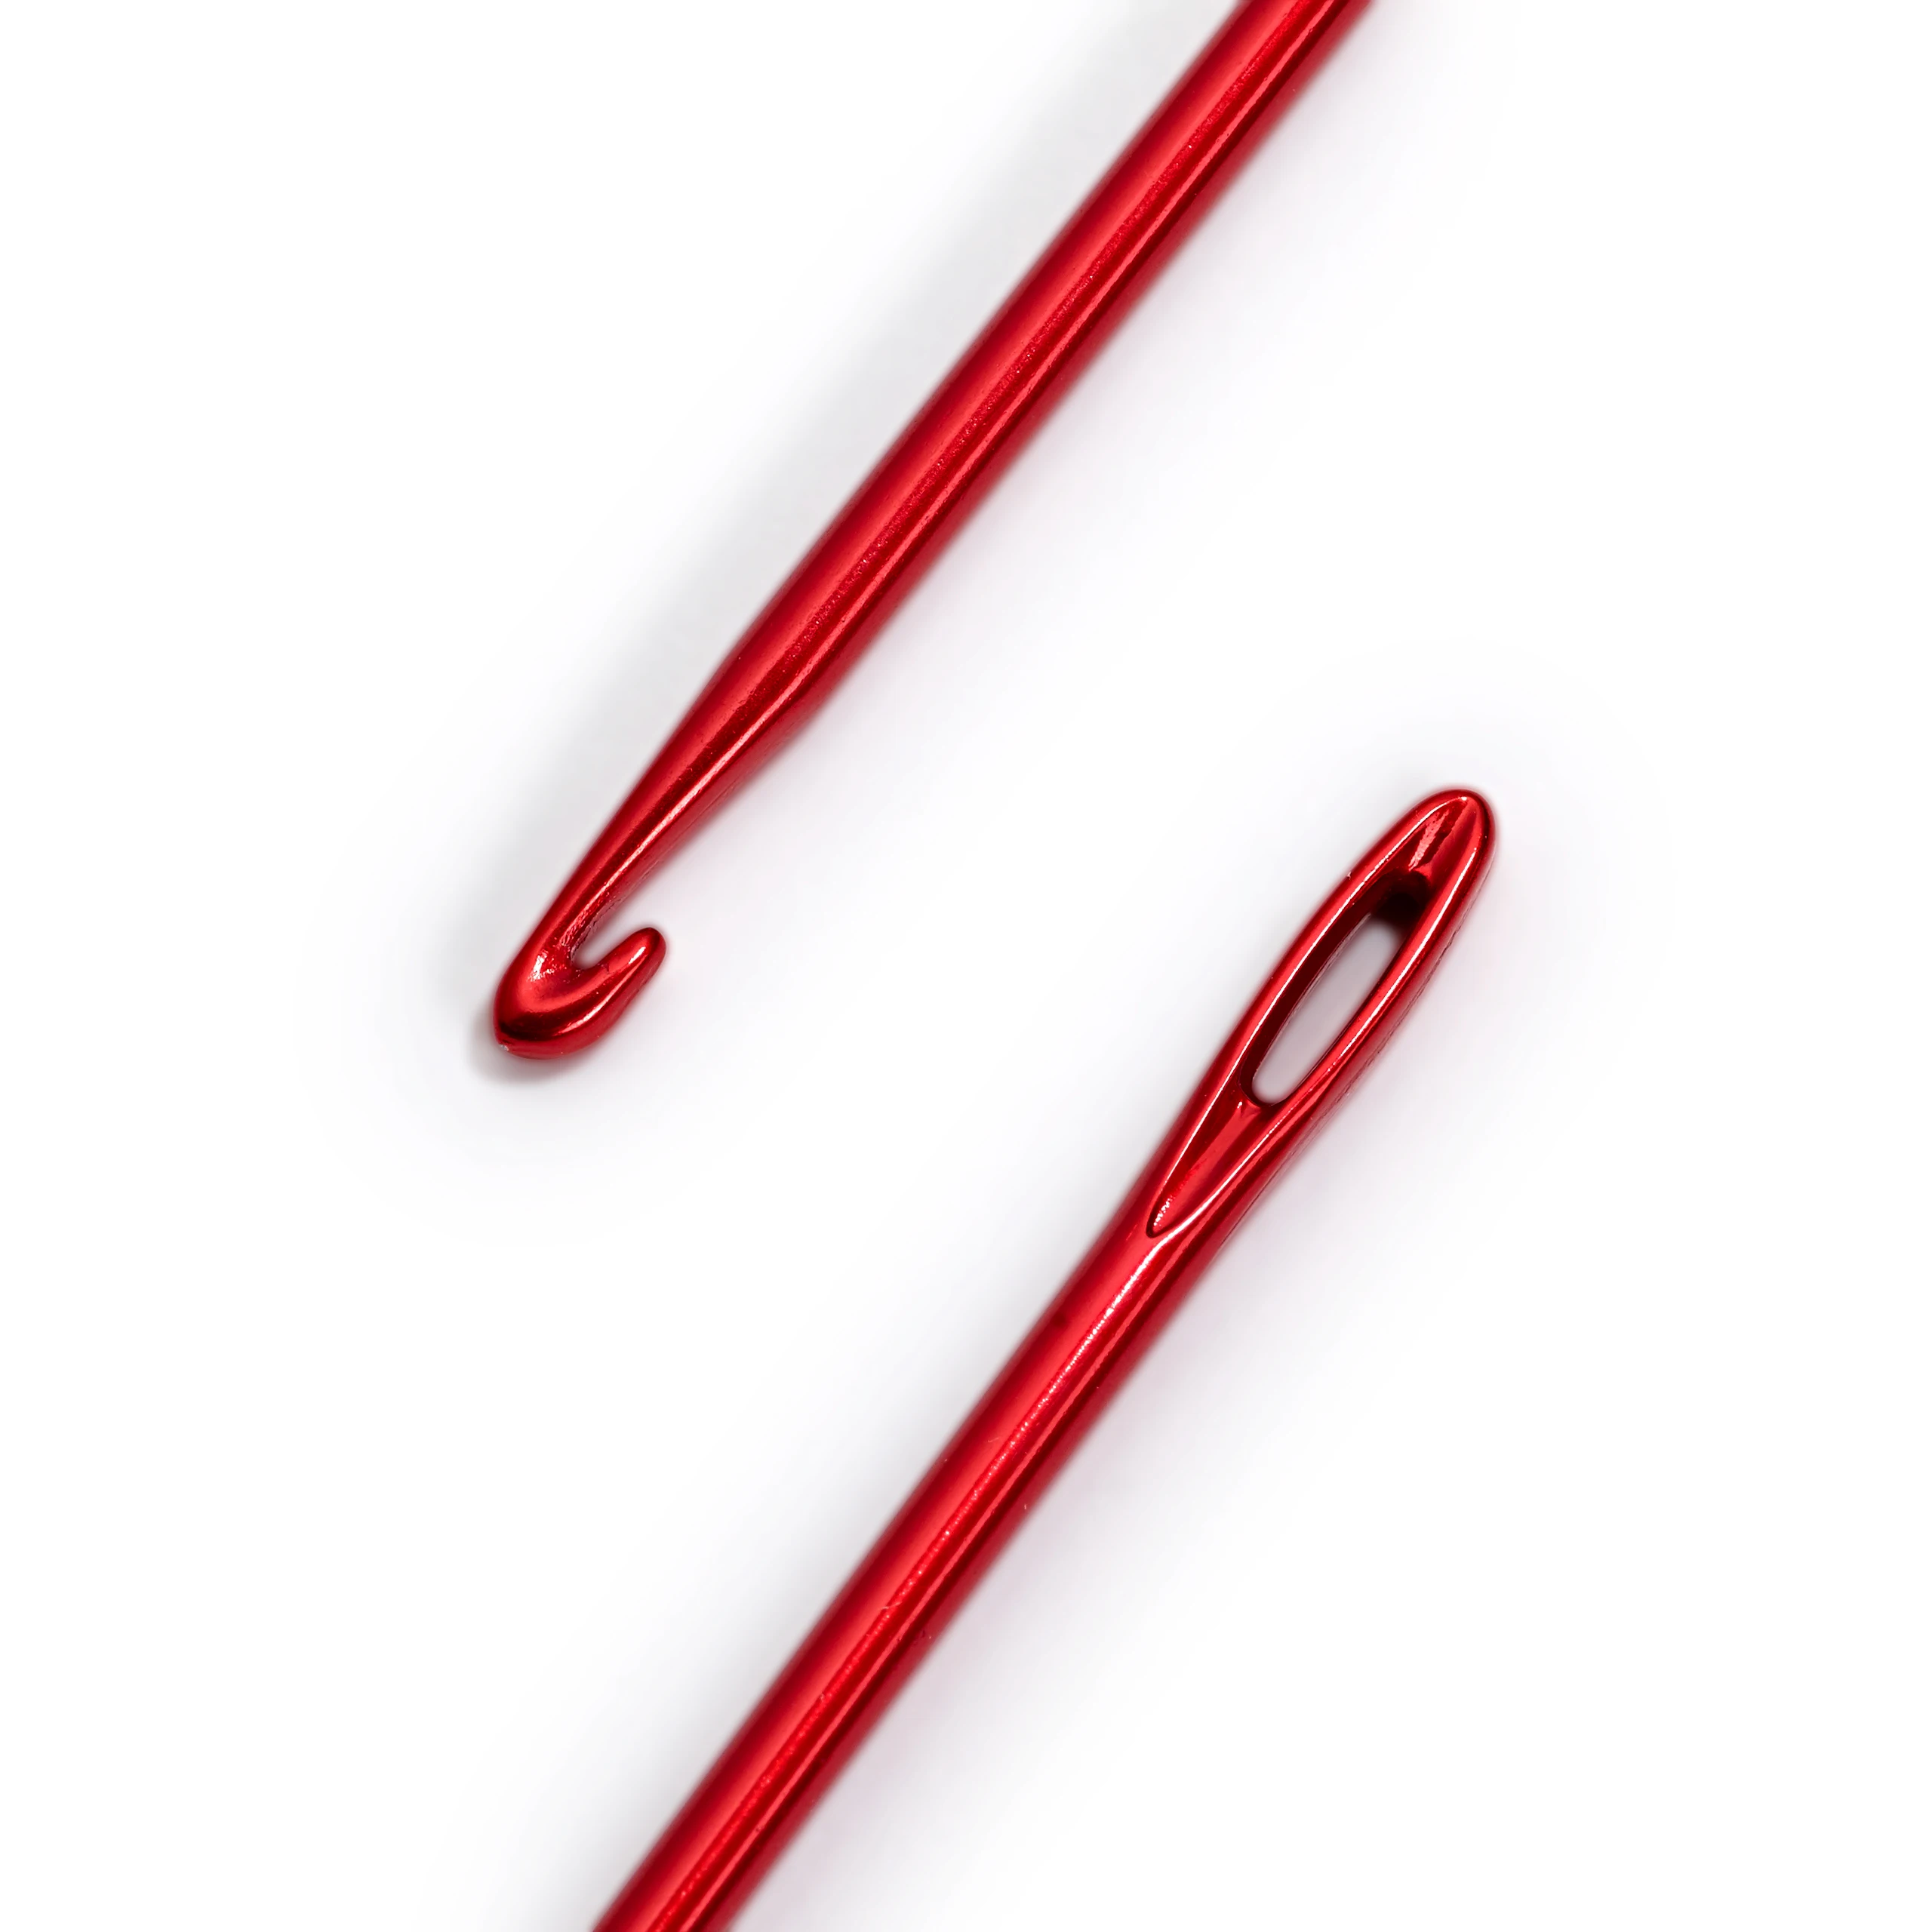 Германия Prym шерсть, сплетенная крючком 16,5 см 195904/195908, игла для вязания, крючок для вязания шерсти, инструмент для лоскутного шитья